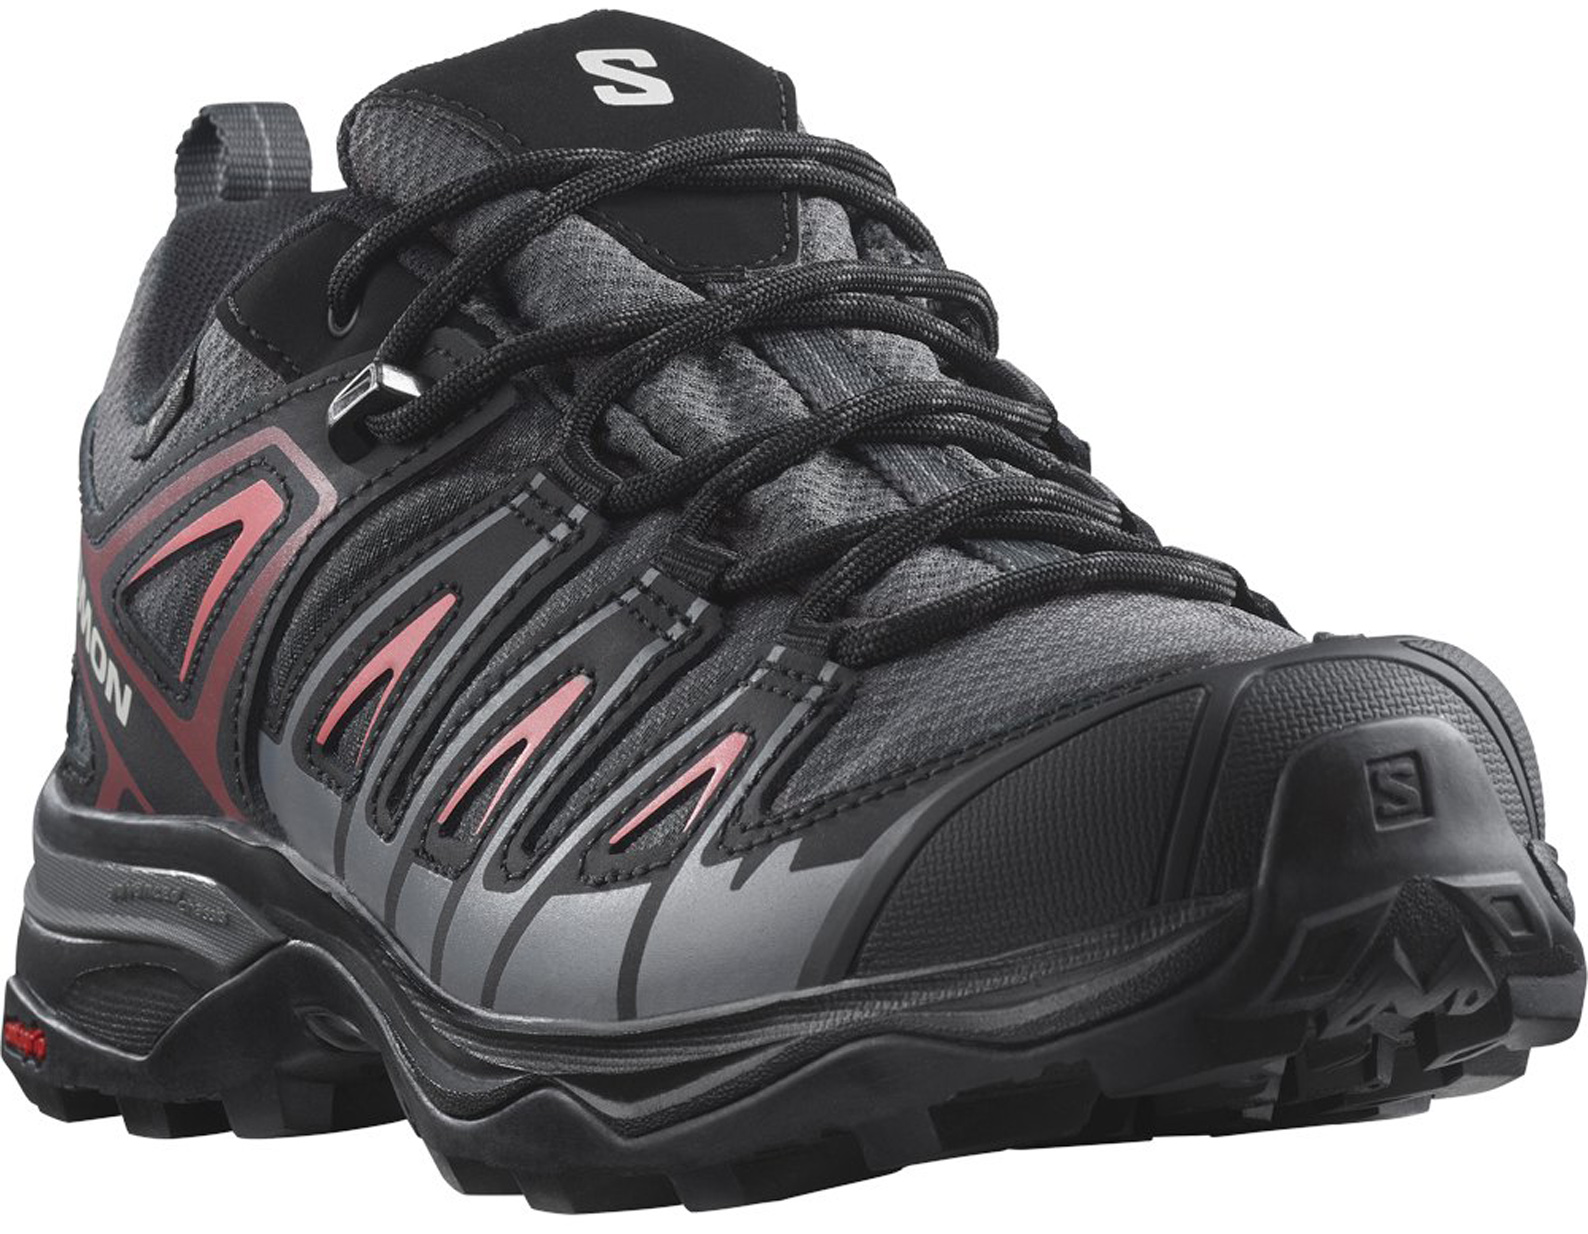 Zapatillas de Montaña Salomon X Ultra Pioneer Gore-Tex Negro/Gris